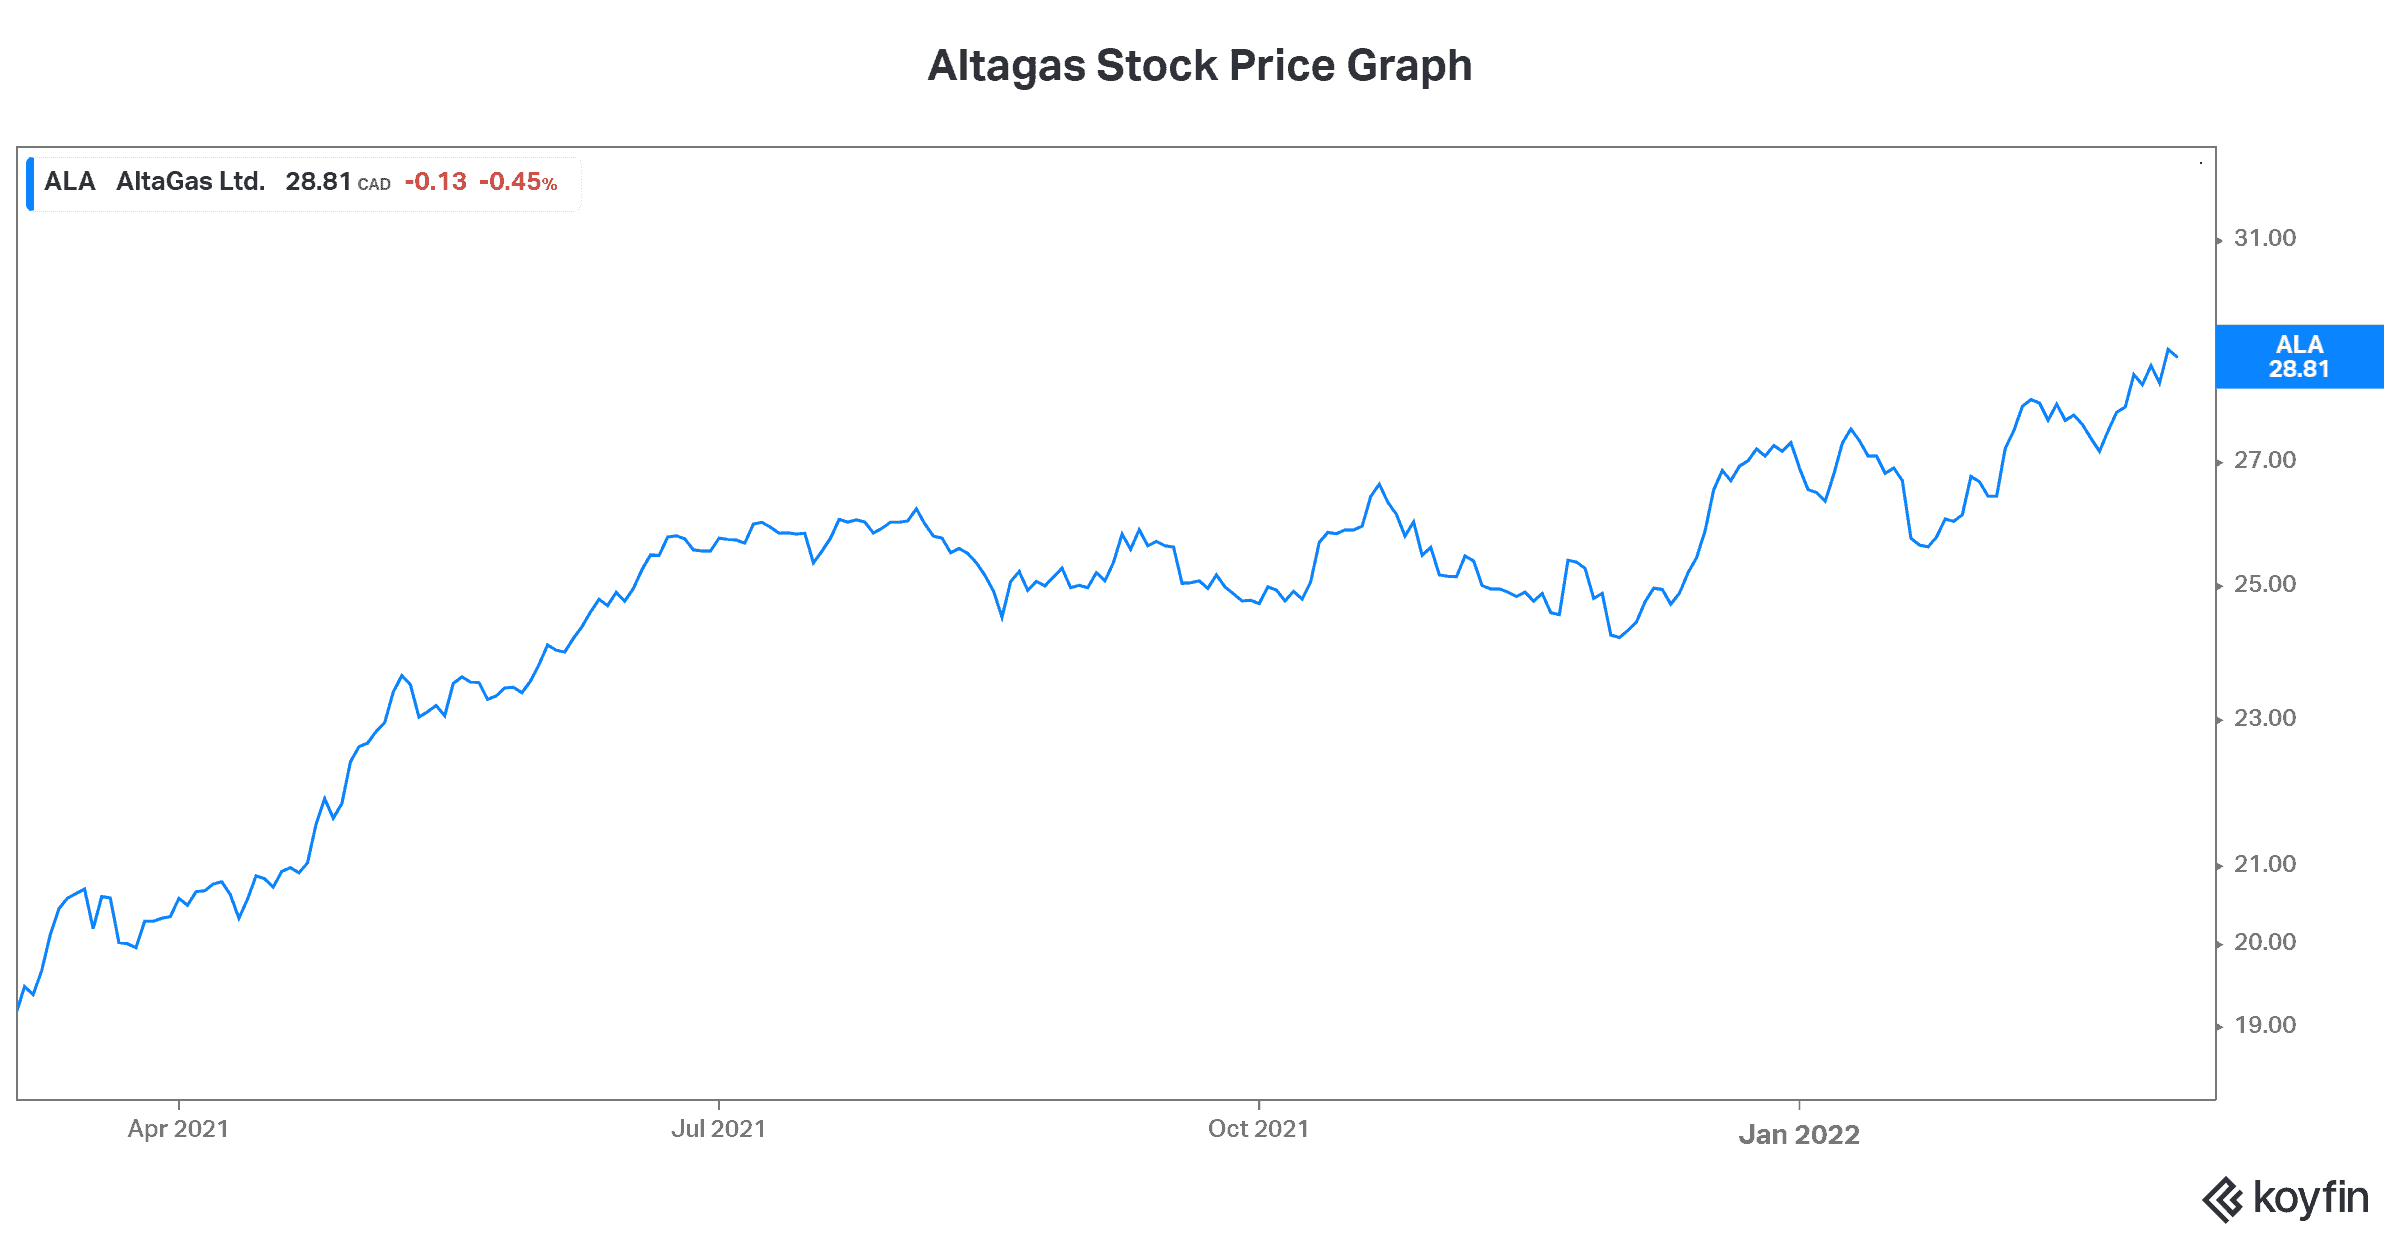 Oil prices crude oil price energy stock Altagas stock